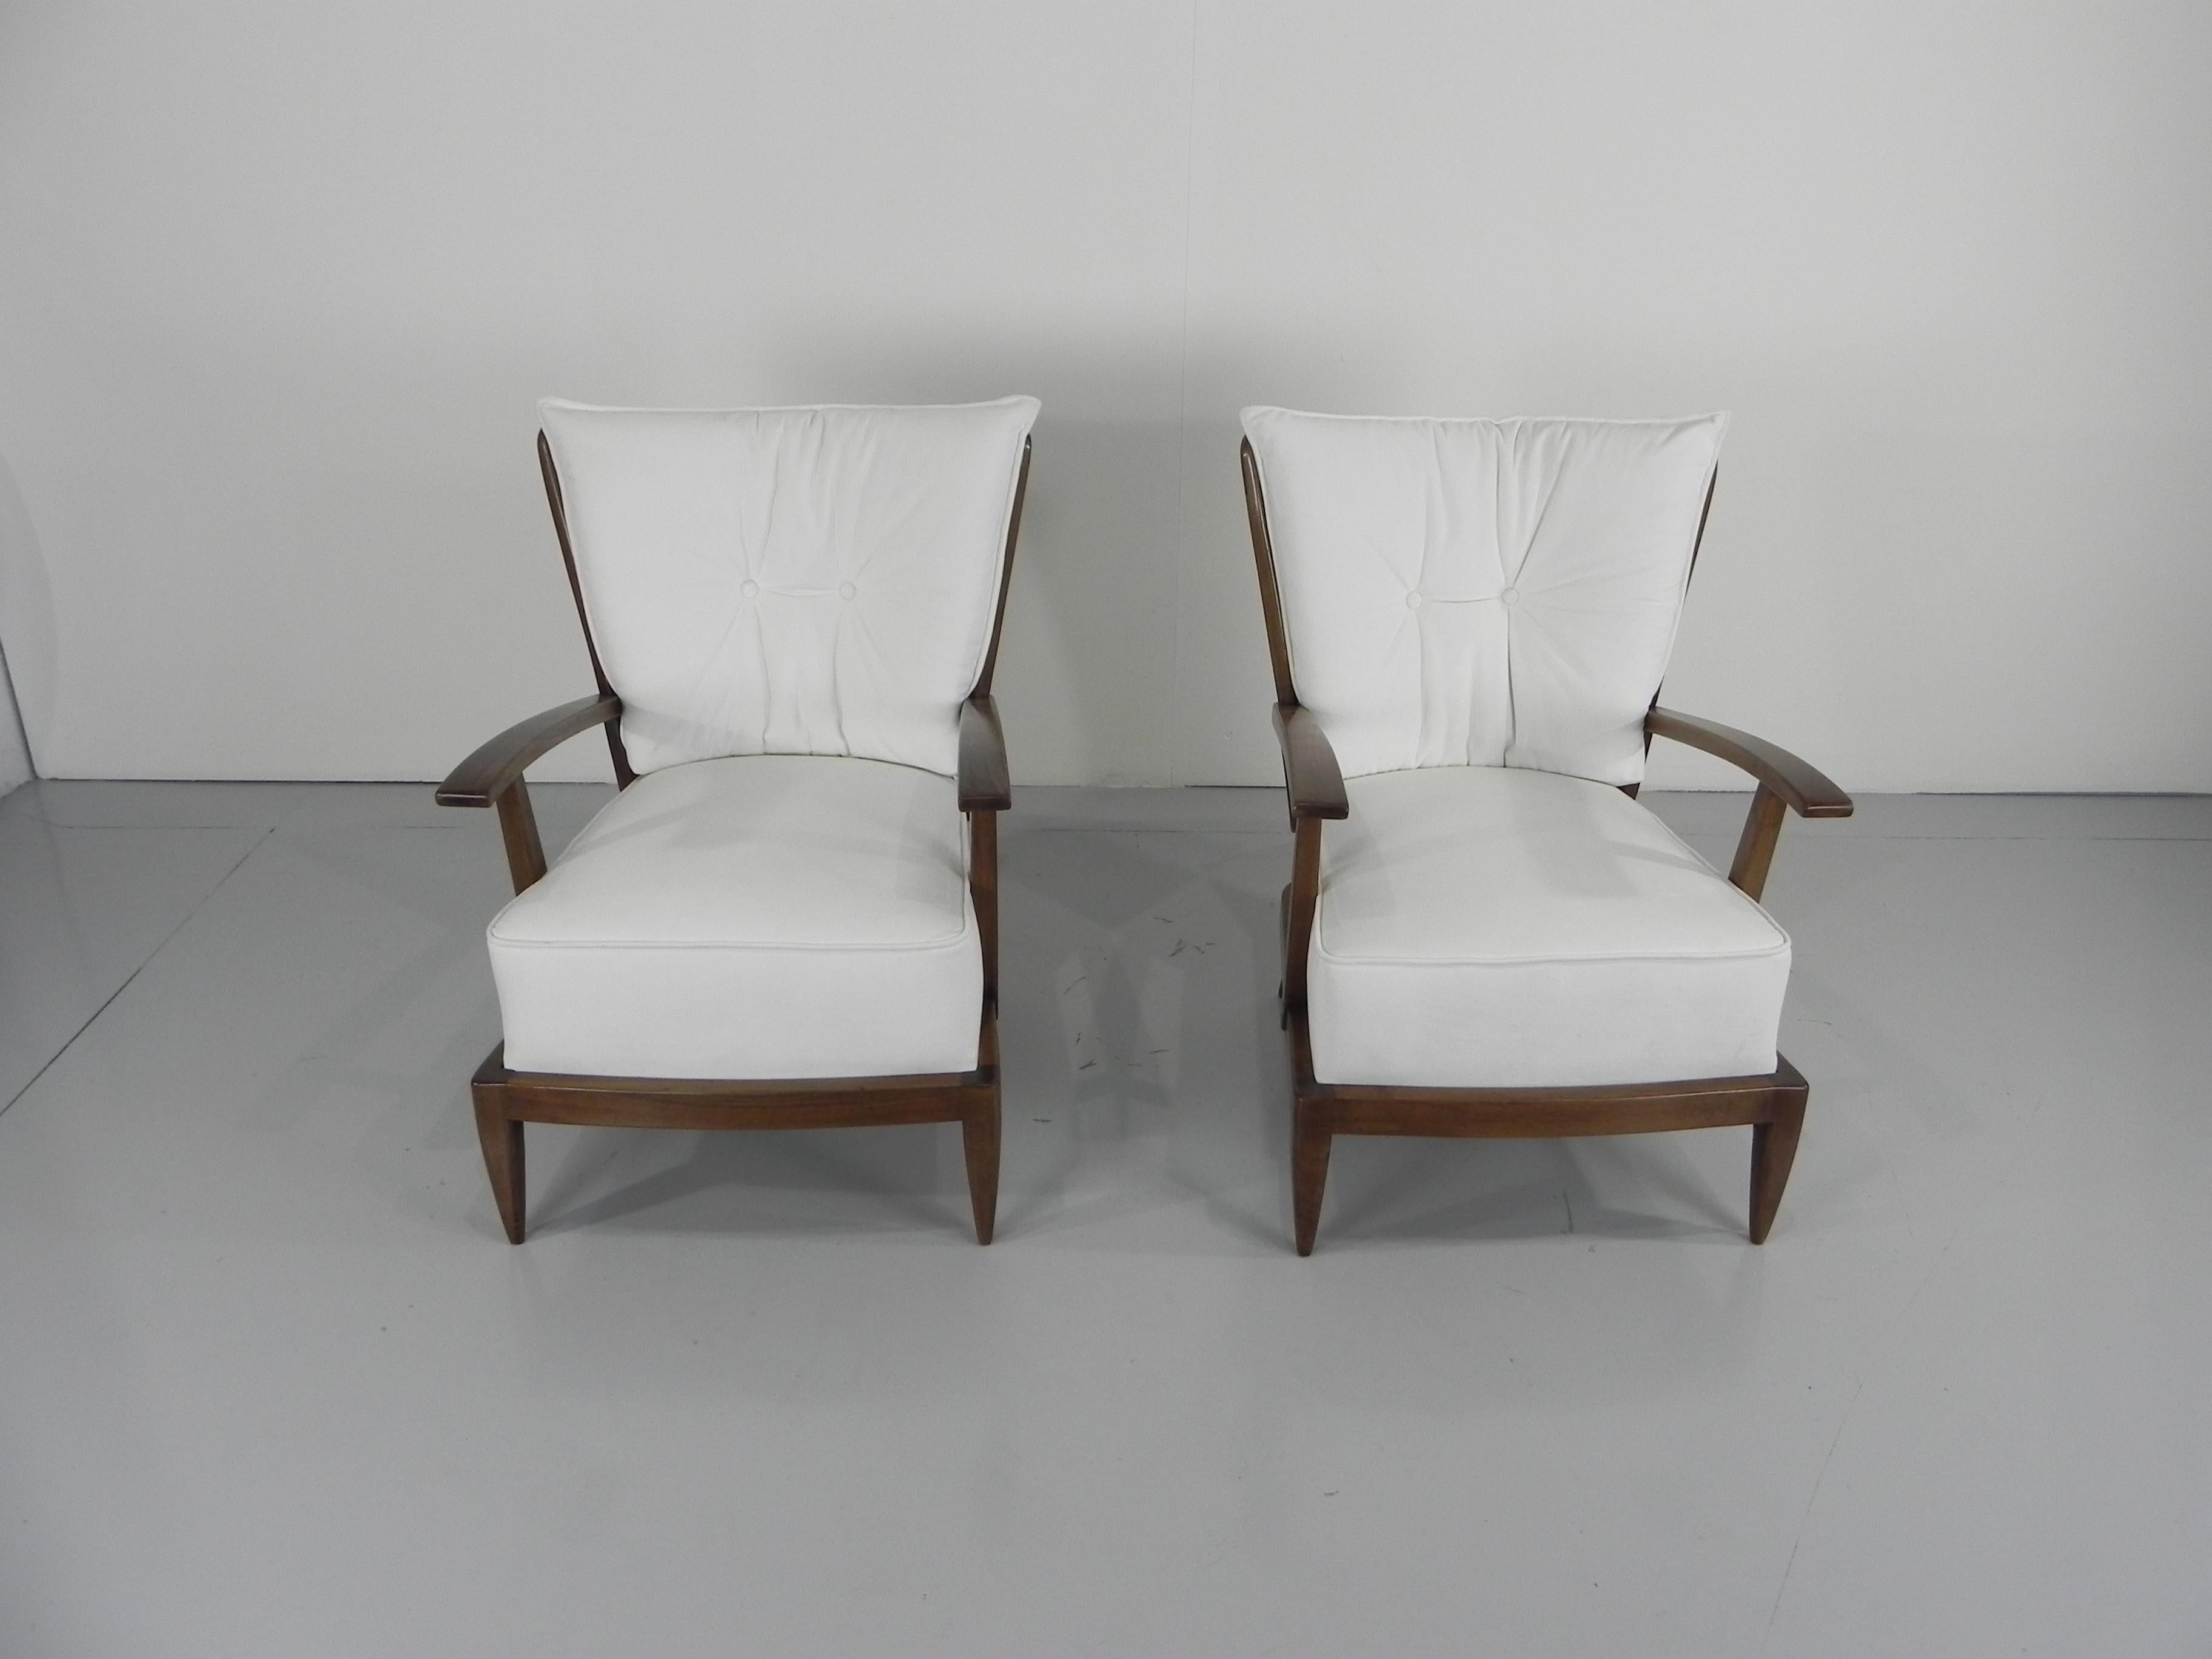 Paolo Buffa (1903-1970). Hübsches Paar nussbaumgebeizter Sessel mit spindelförmiger Rücken- und Armlehne, geschnitzten Armlehnen und konischen Beinen, Italien, um 1950.